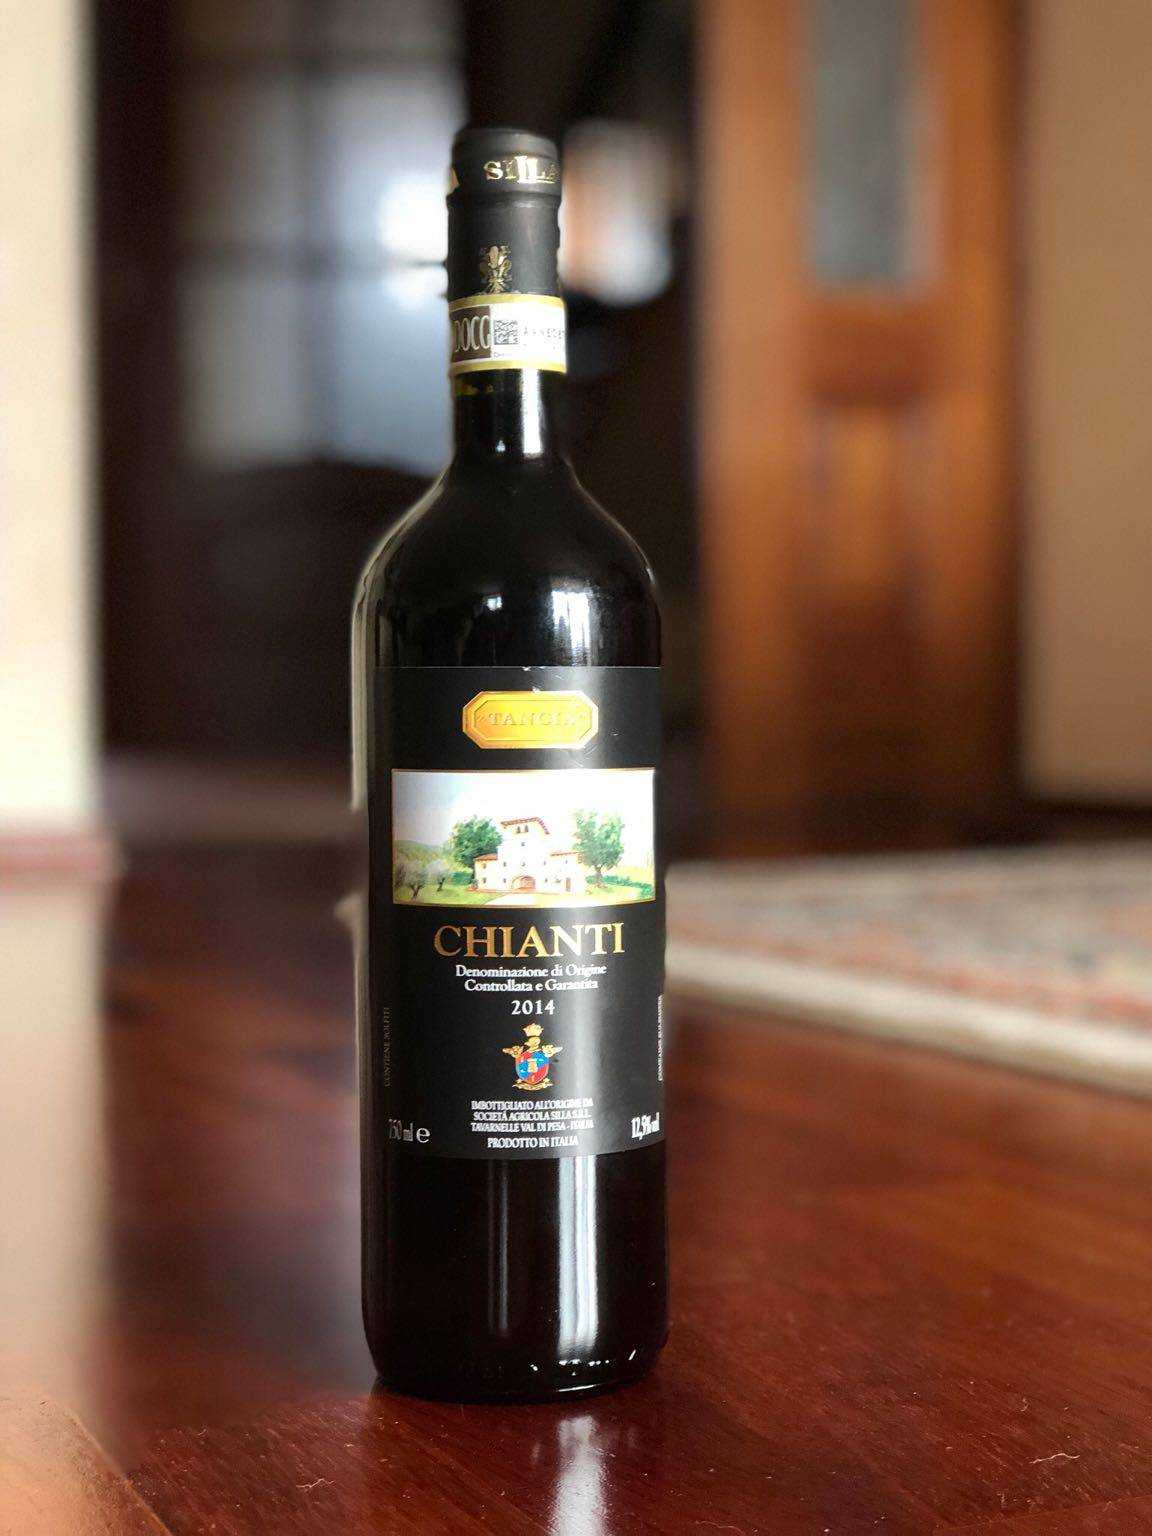 Кьянти (chianti) – самое известное итальянское вино